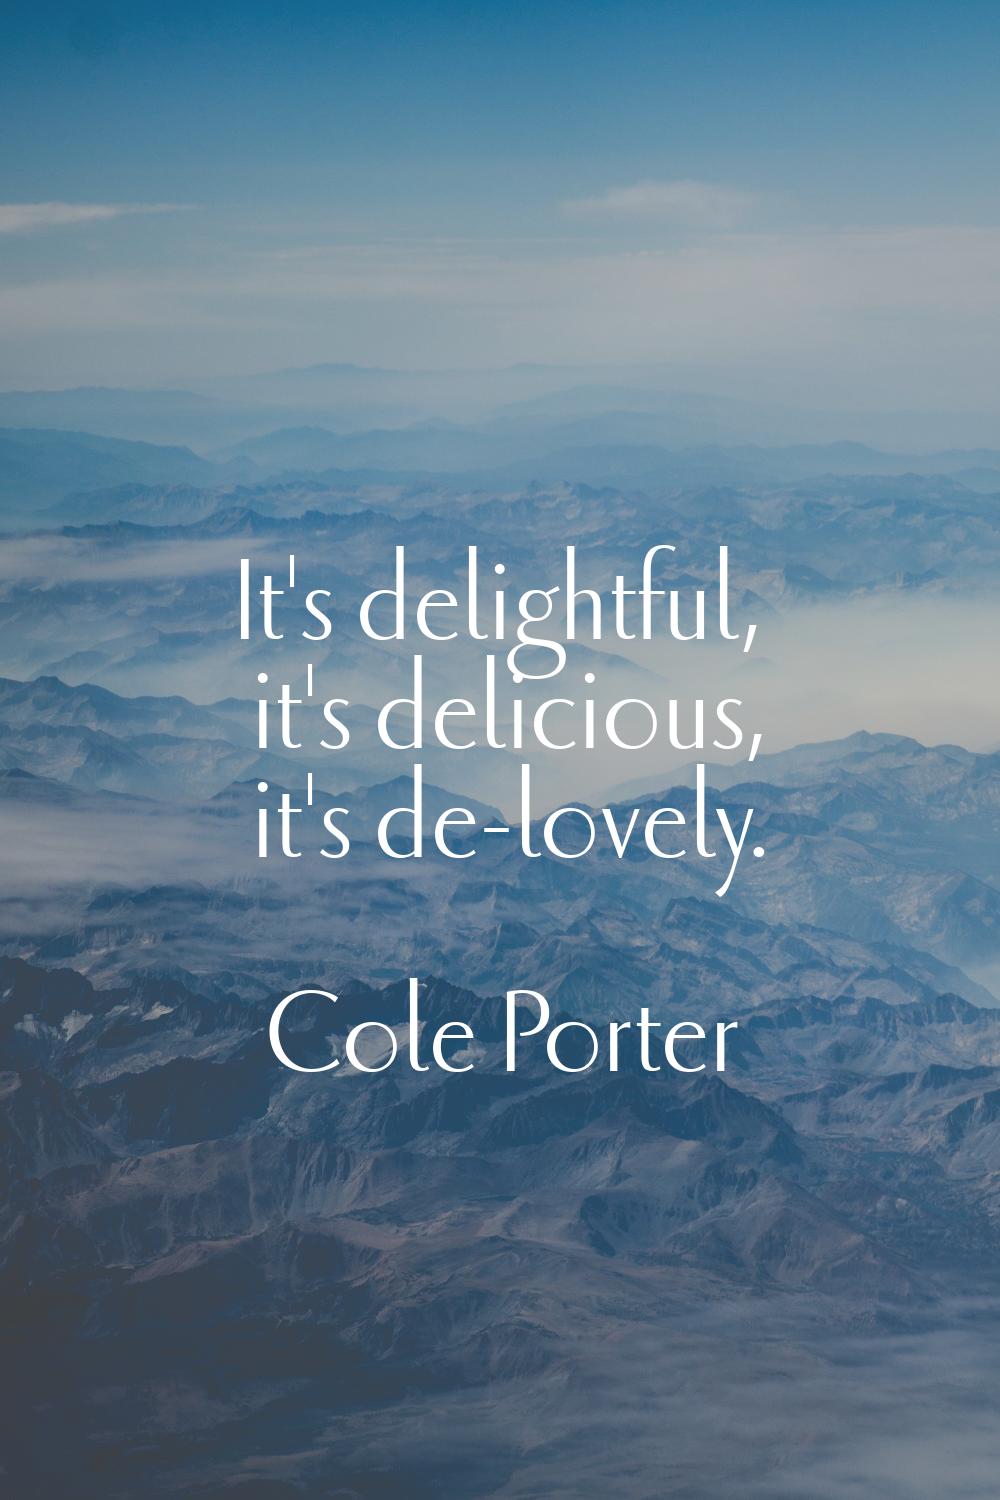 It's delightful, it's delicious, it's de-lovely.